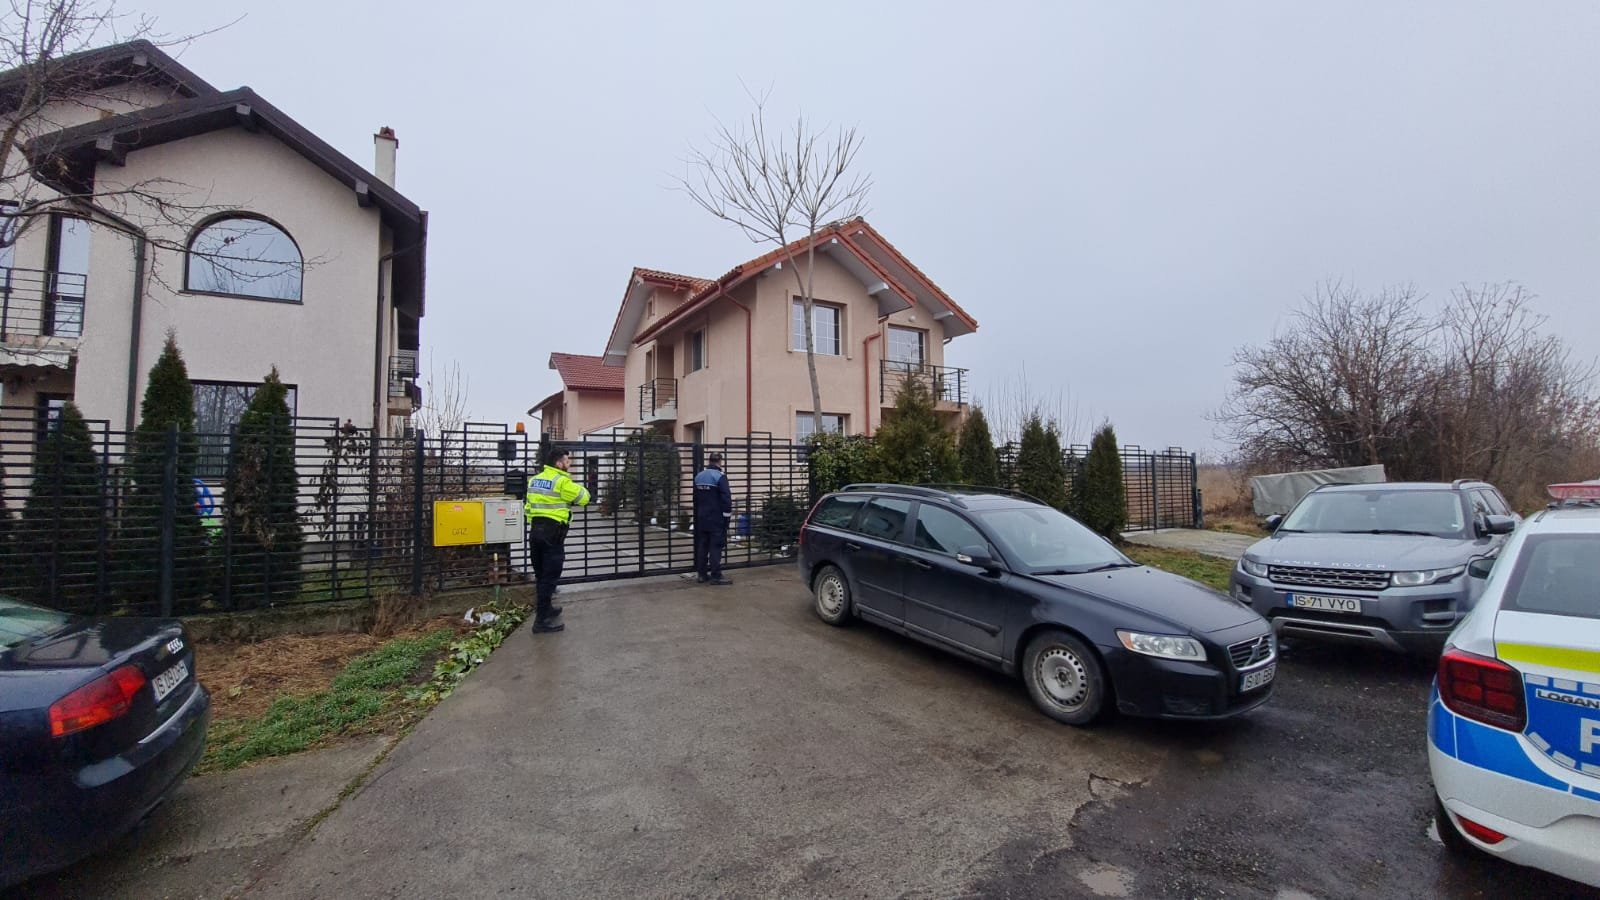  Dublul asasinat din Iași, descoperit pentru că studentul nu a mai urcat în avion